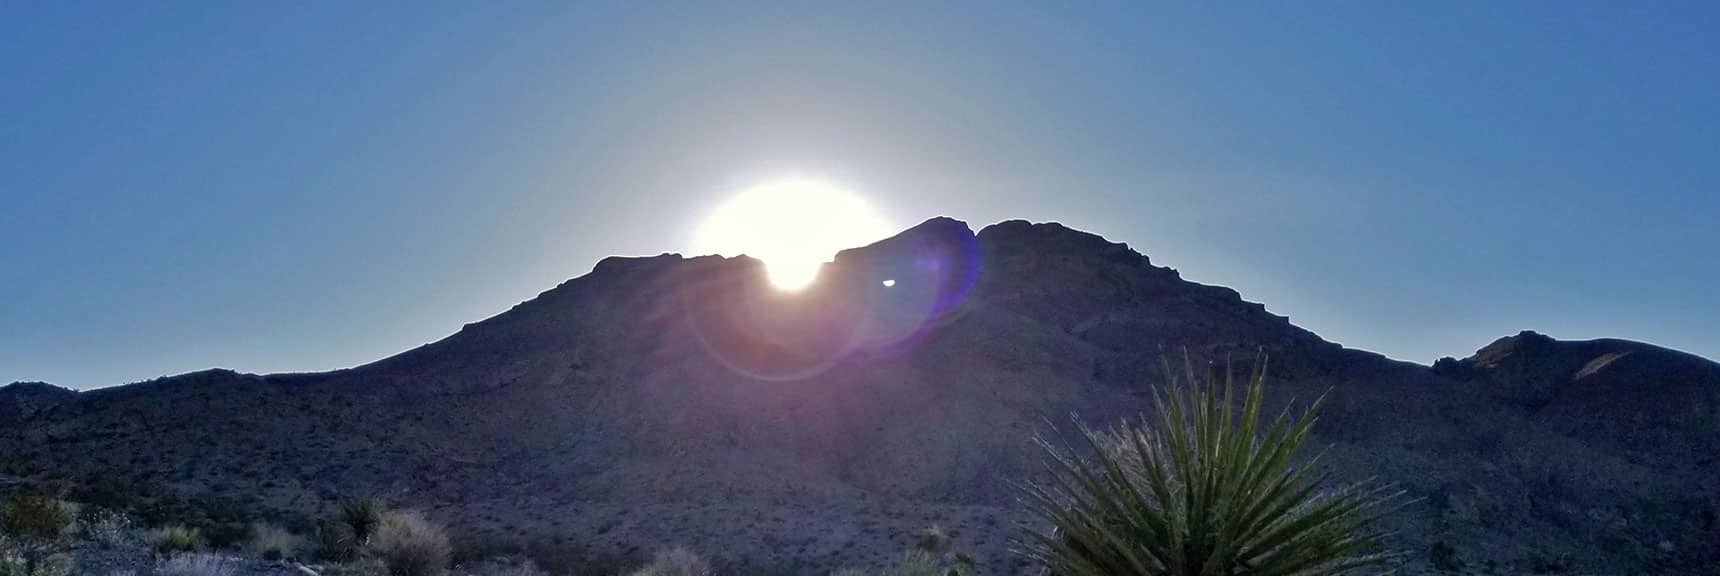 Sunrise Over the West Side of Gass Peak | Gass Peak Eastern Summit Ultra-marathon Adventure, Nevada